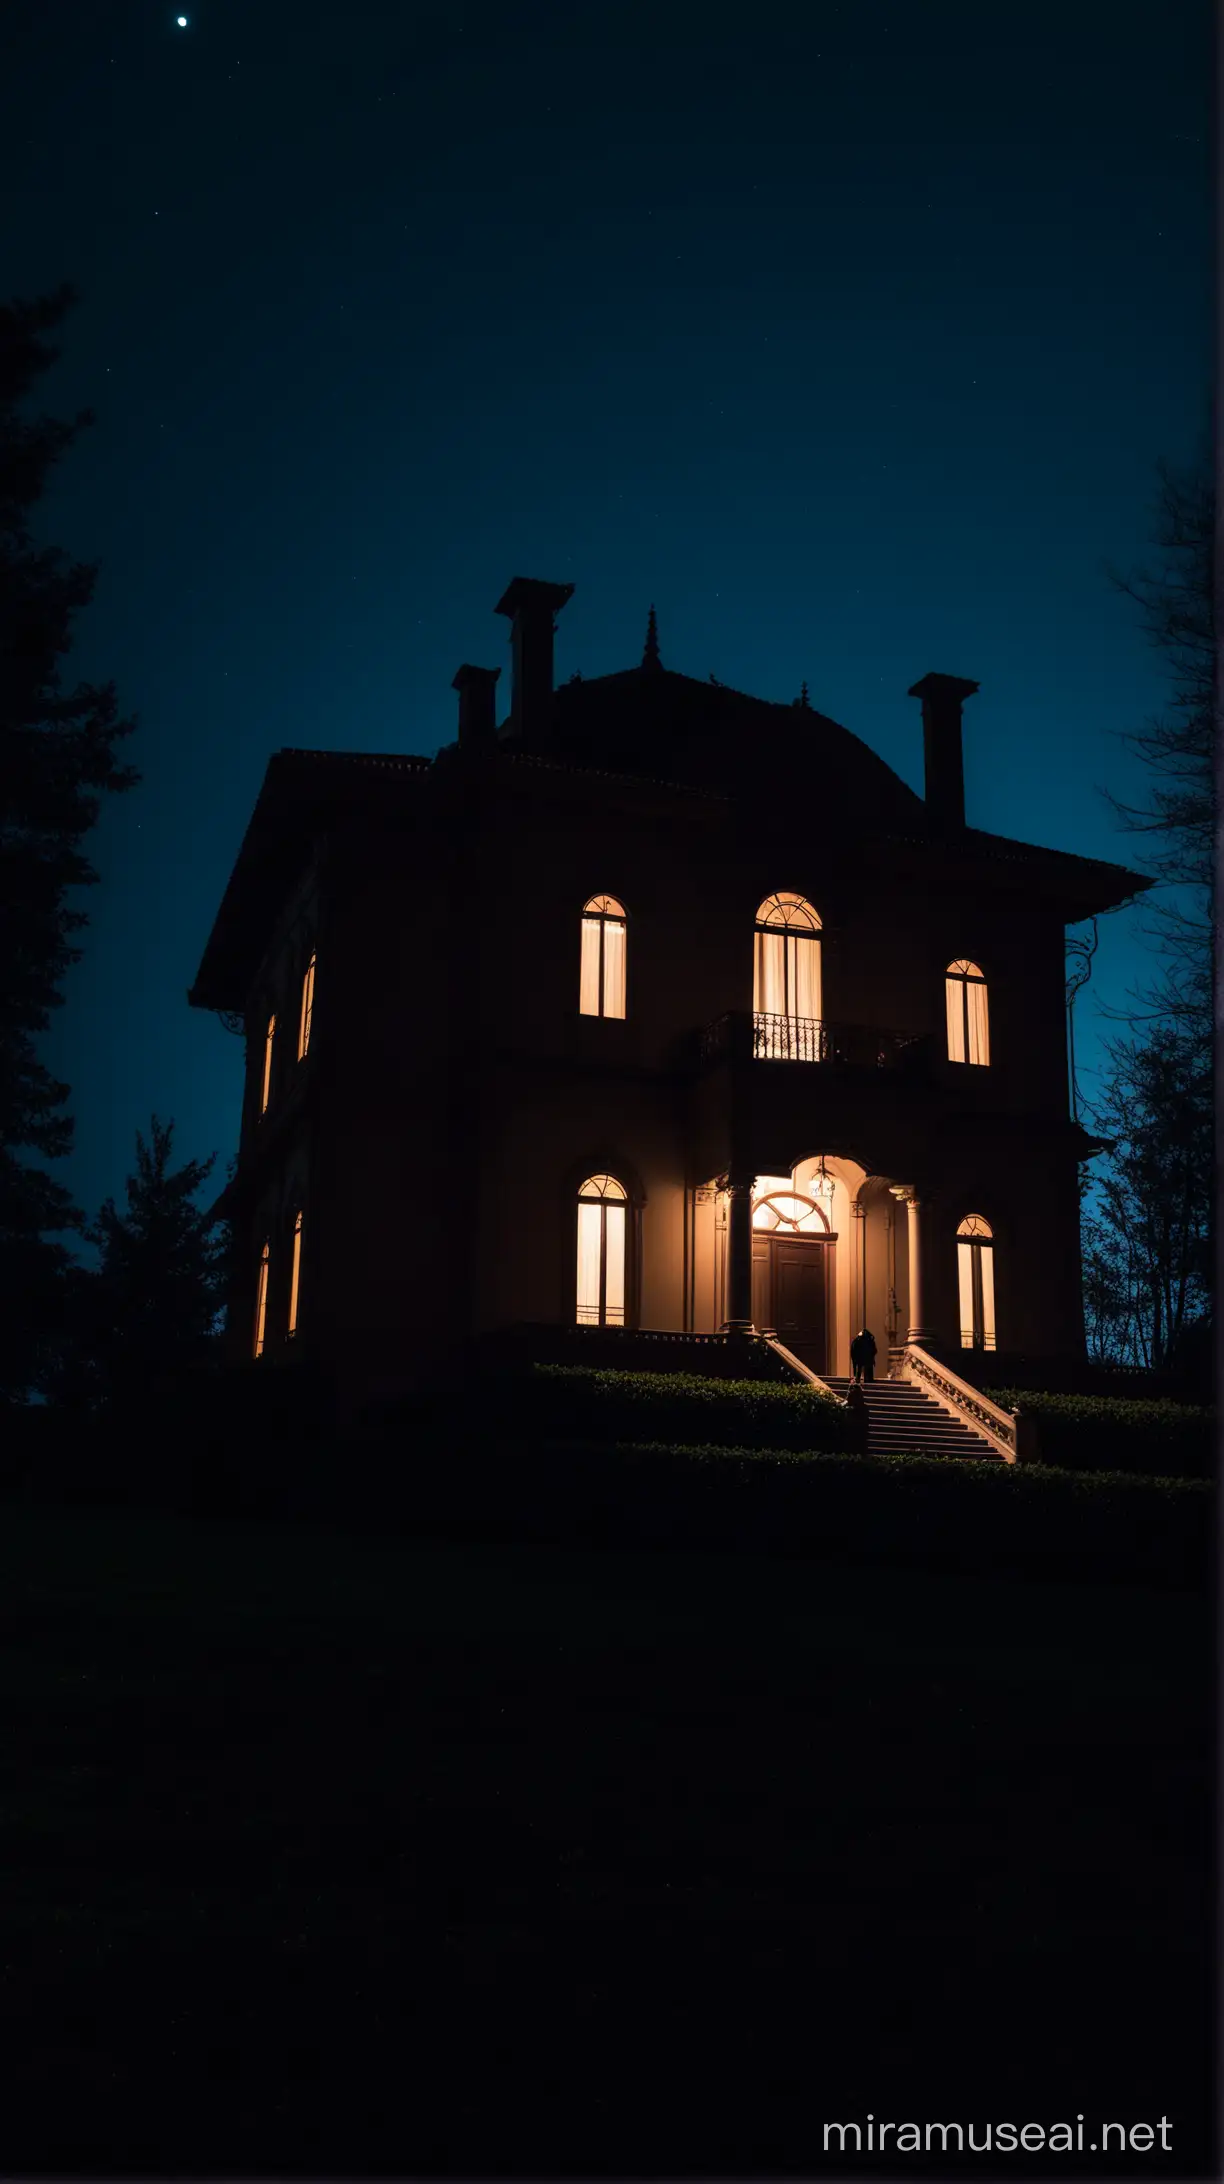 Eerie Night Scene Haunted Villa